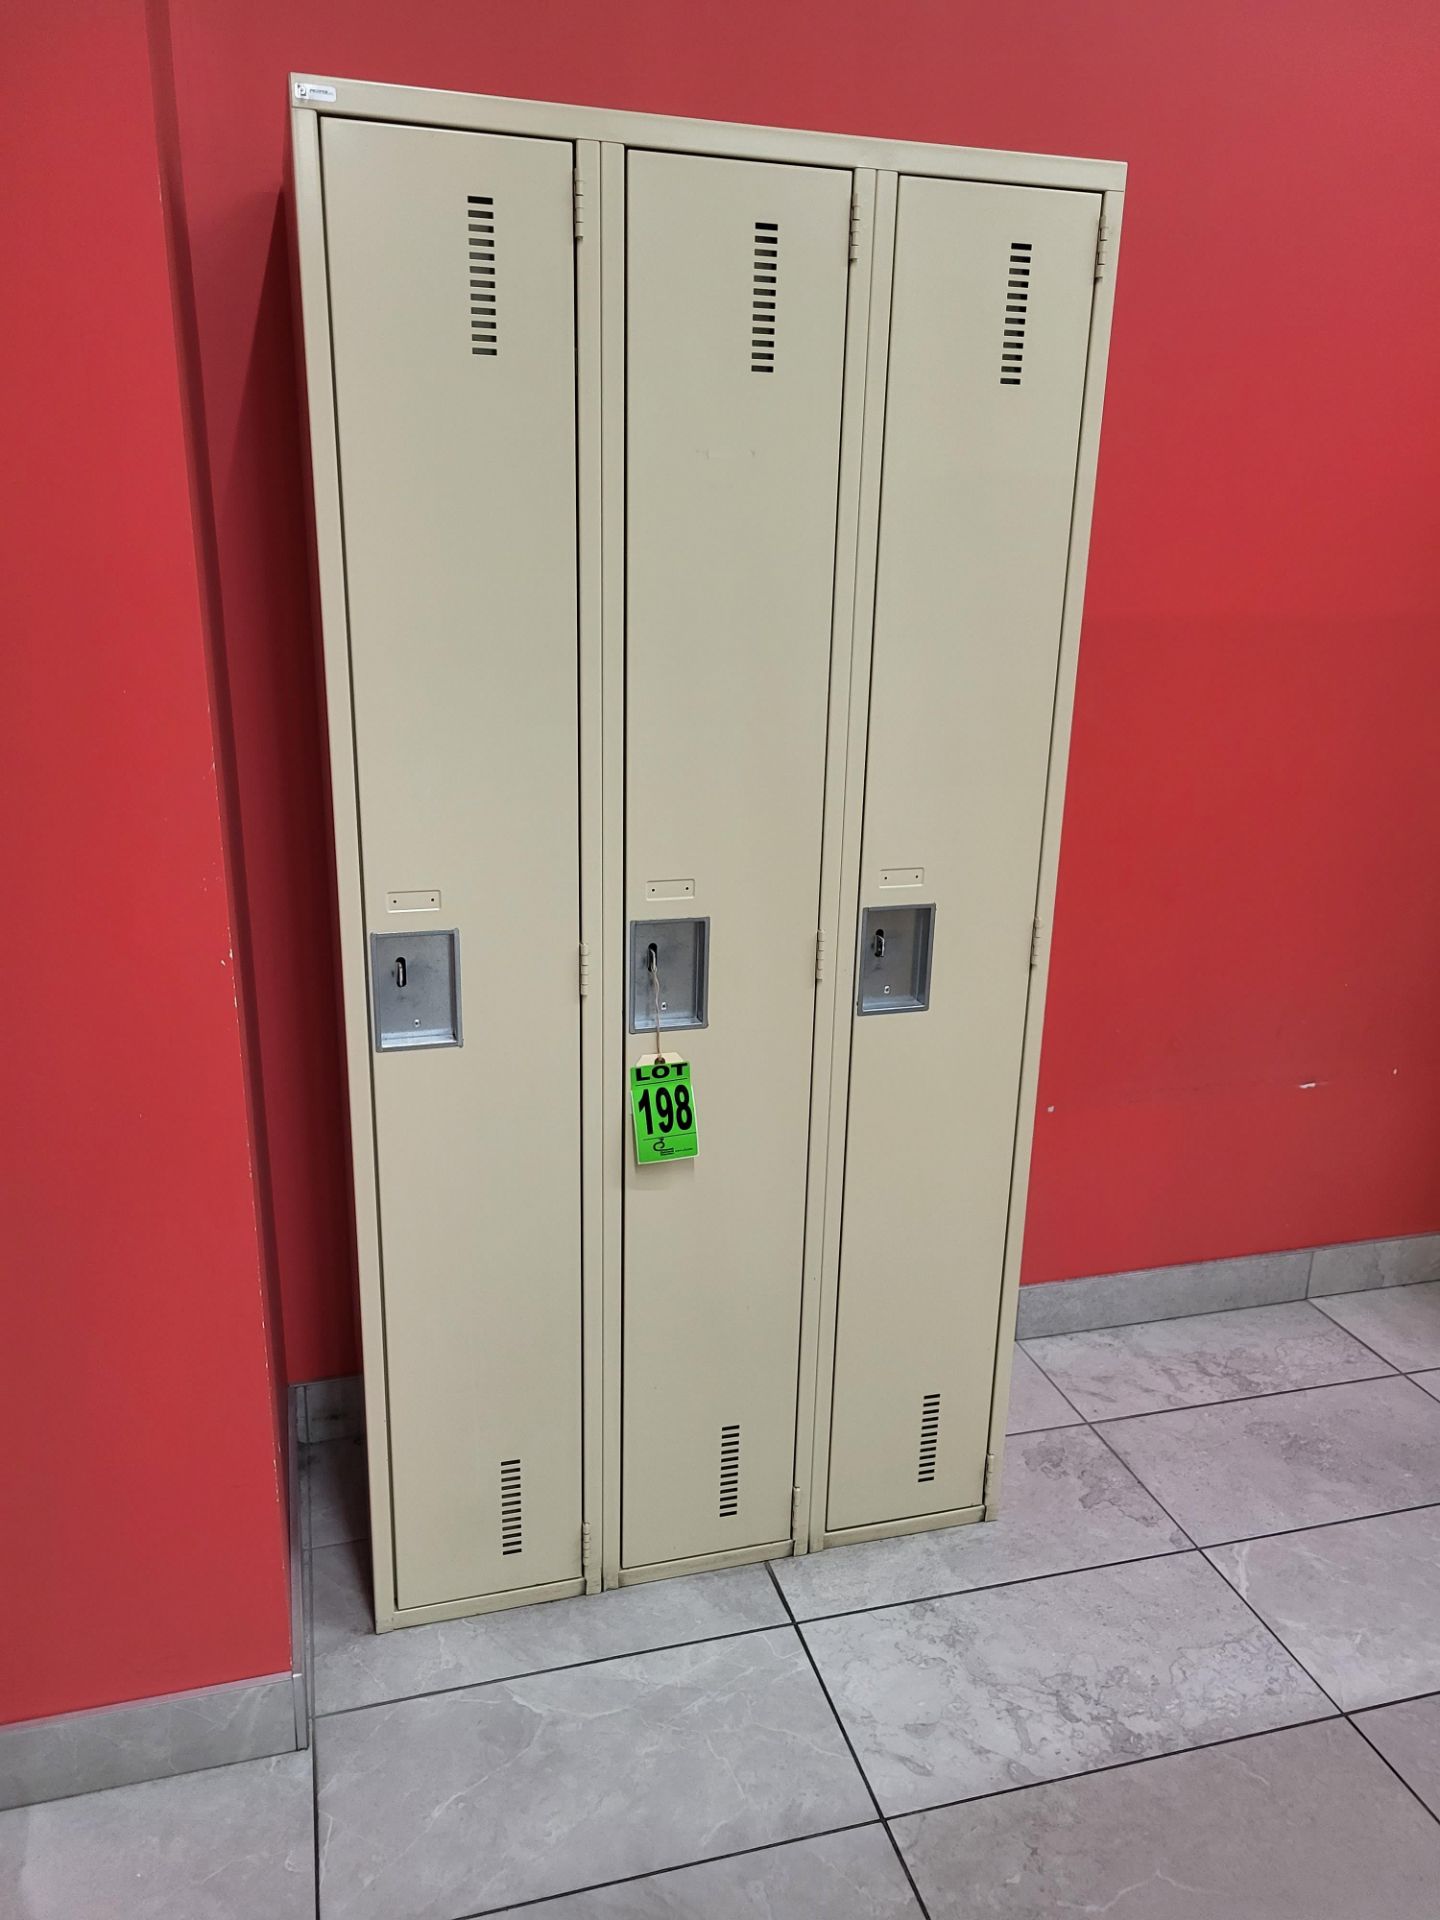 Lot of (1) Freestanding Unit of 3-Door vertical lockers, 72"H x 18"L x 36"W